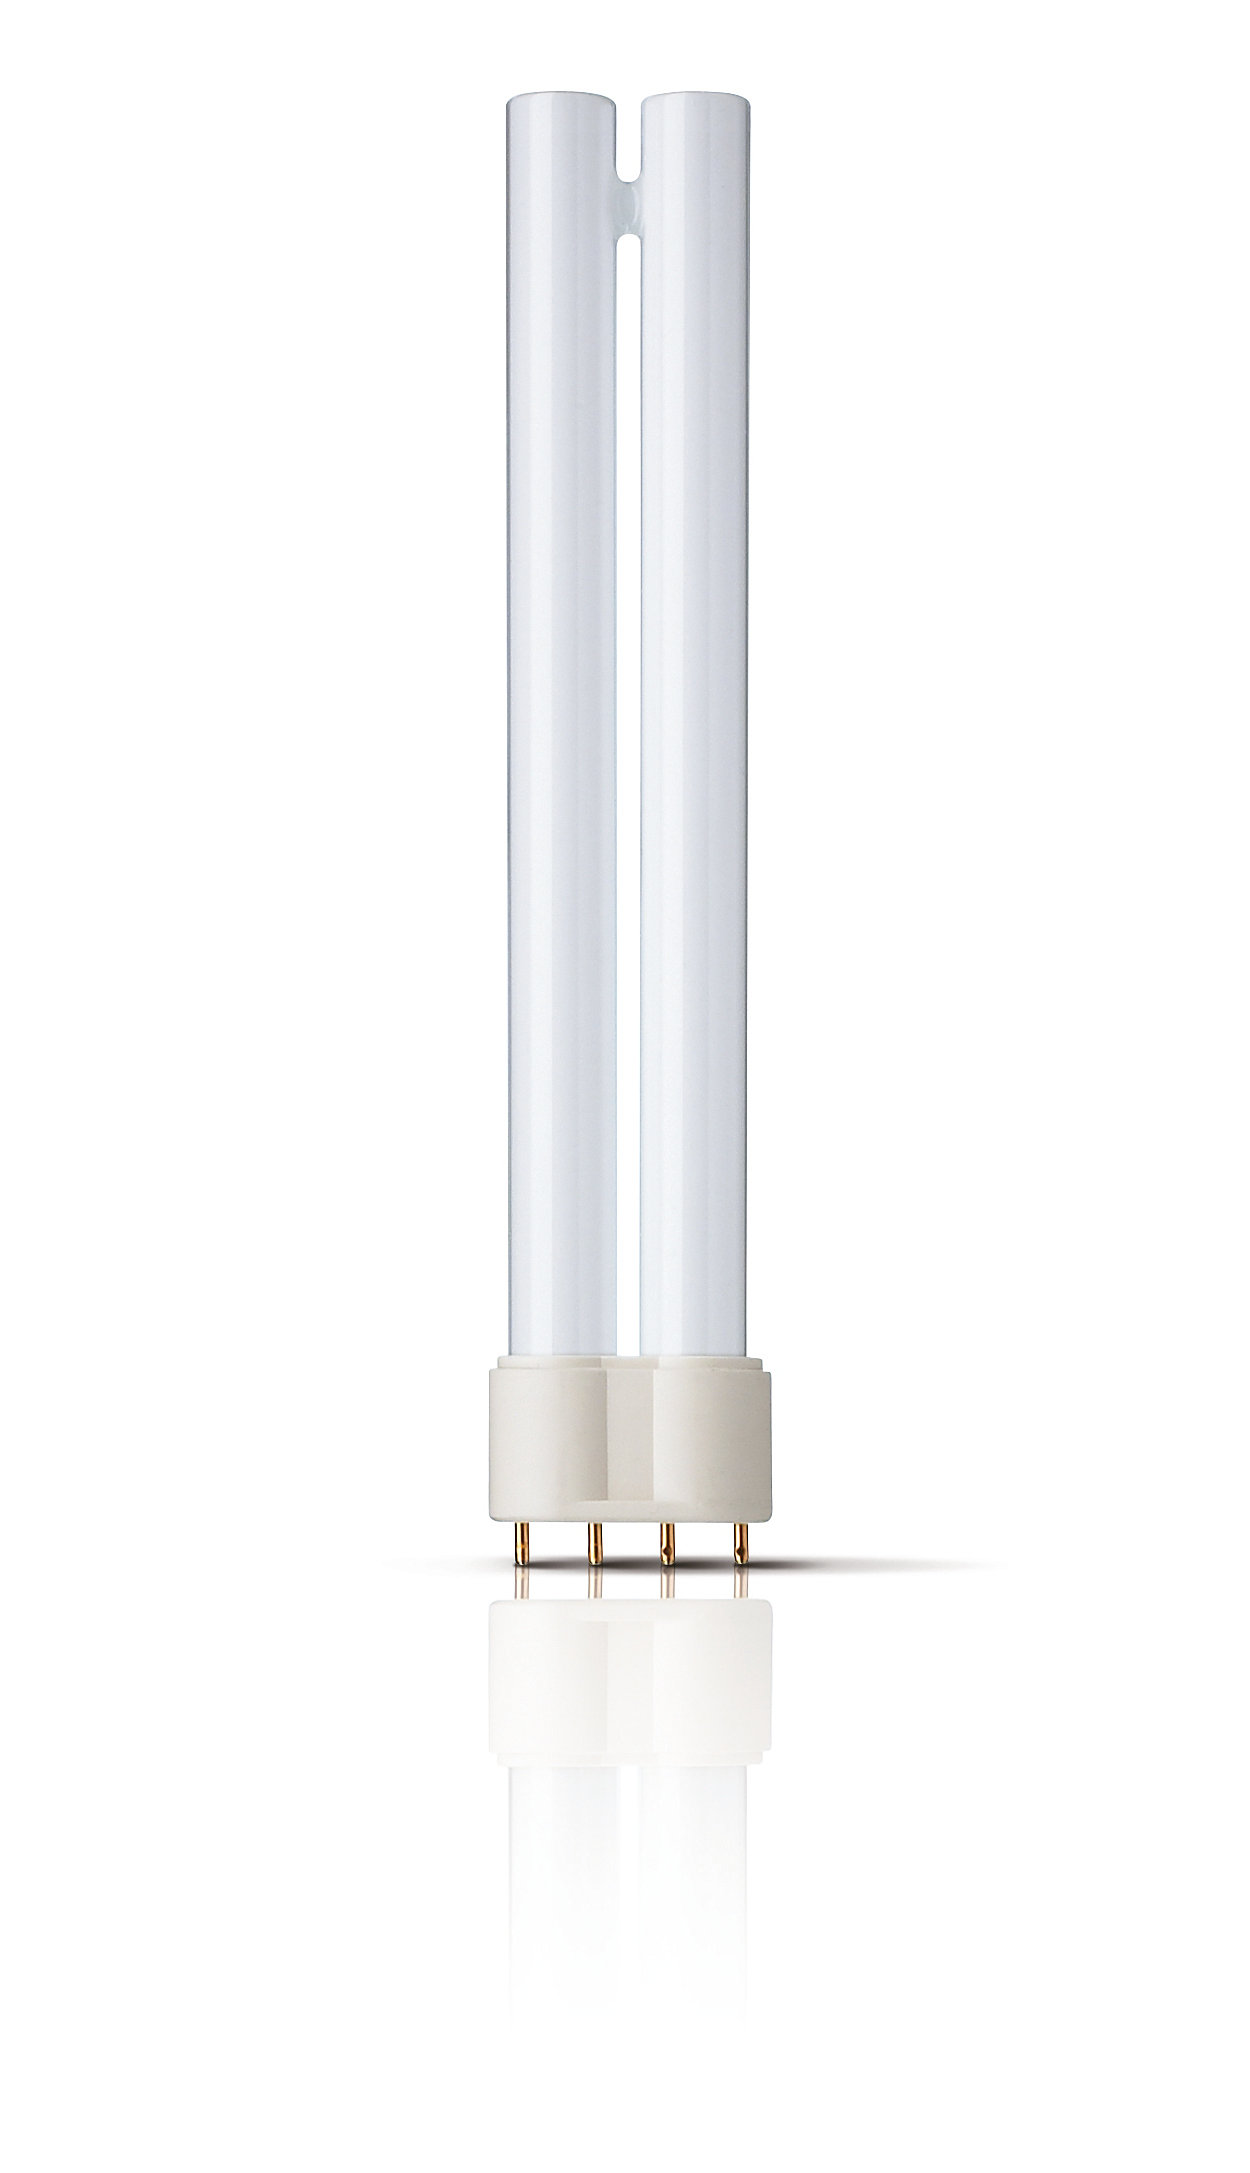 UVB Narrowband PL-L/PL-S – La lampada per fototerapia più efficace e di design